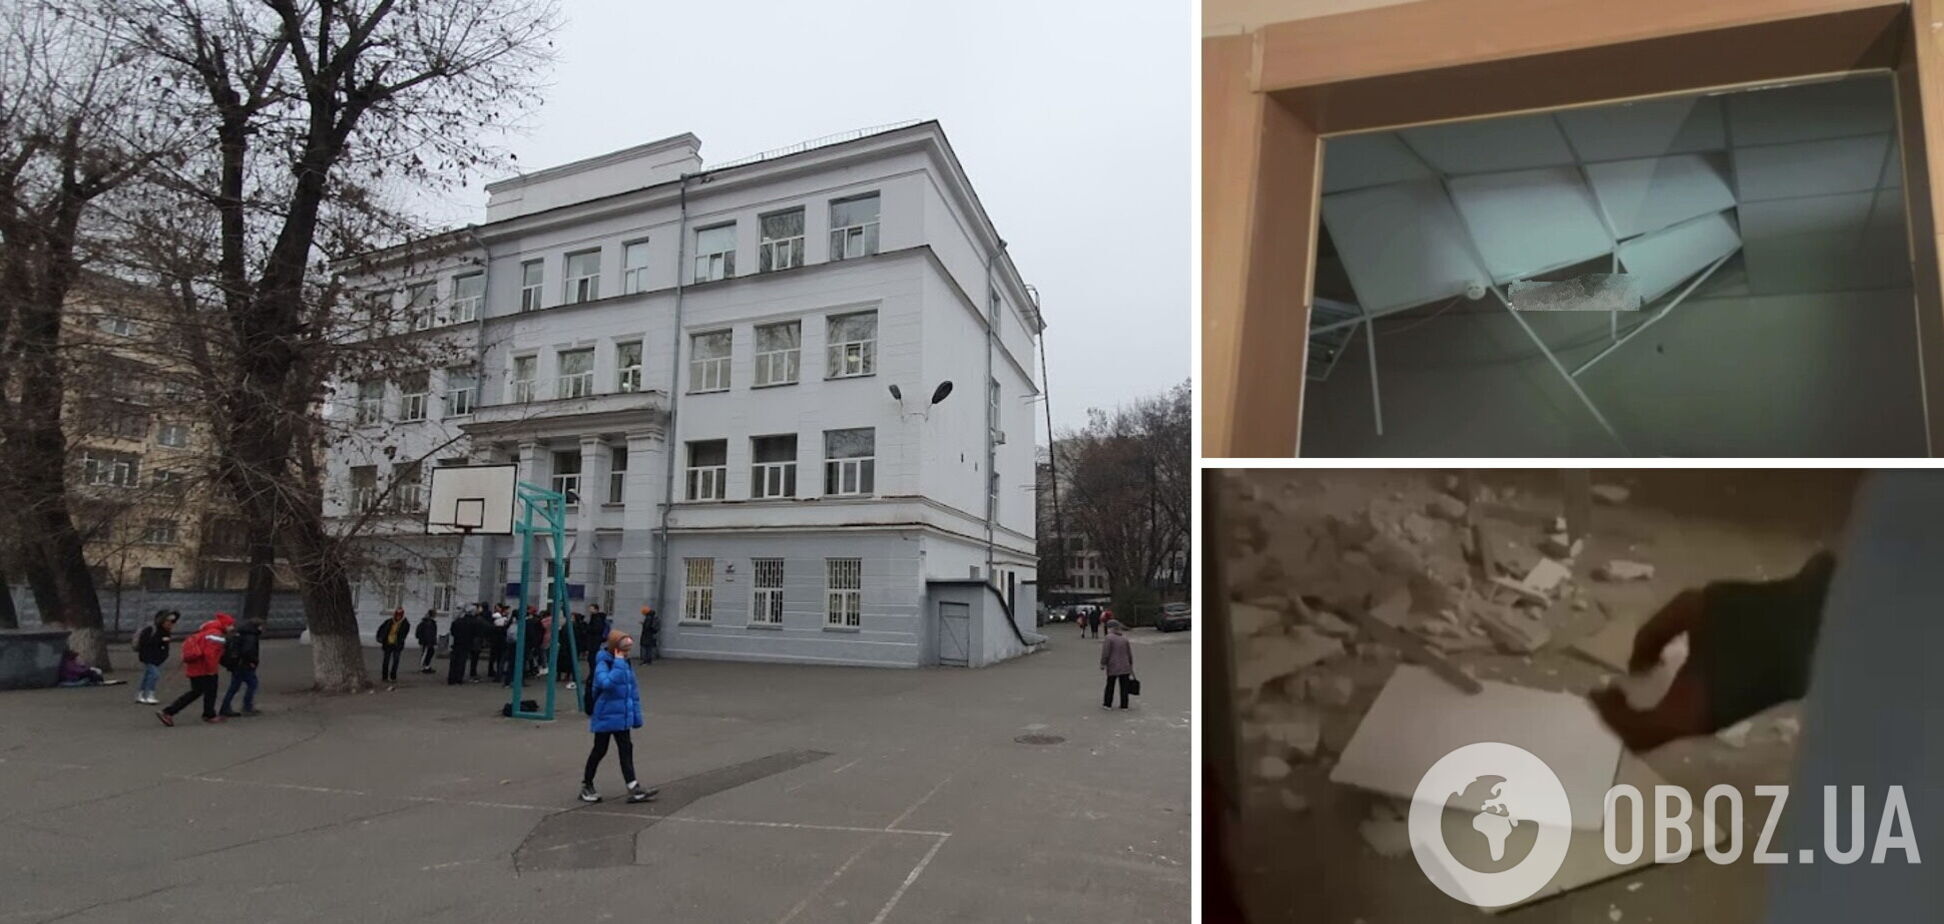 Событие произошло в школе в центре Киева